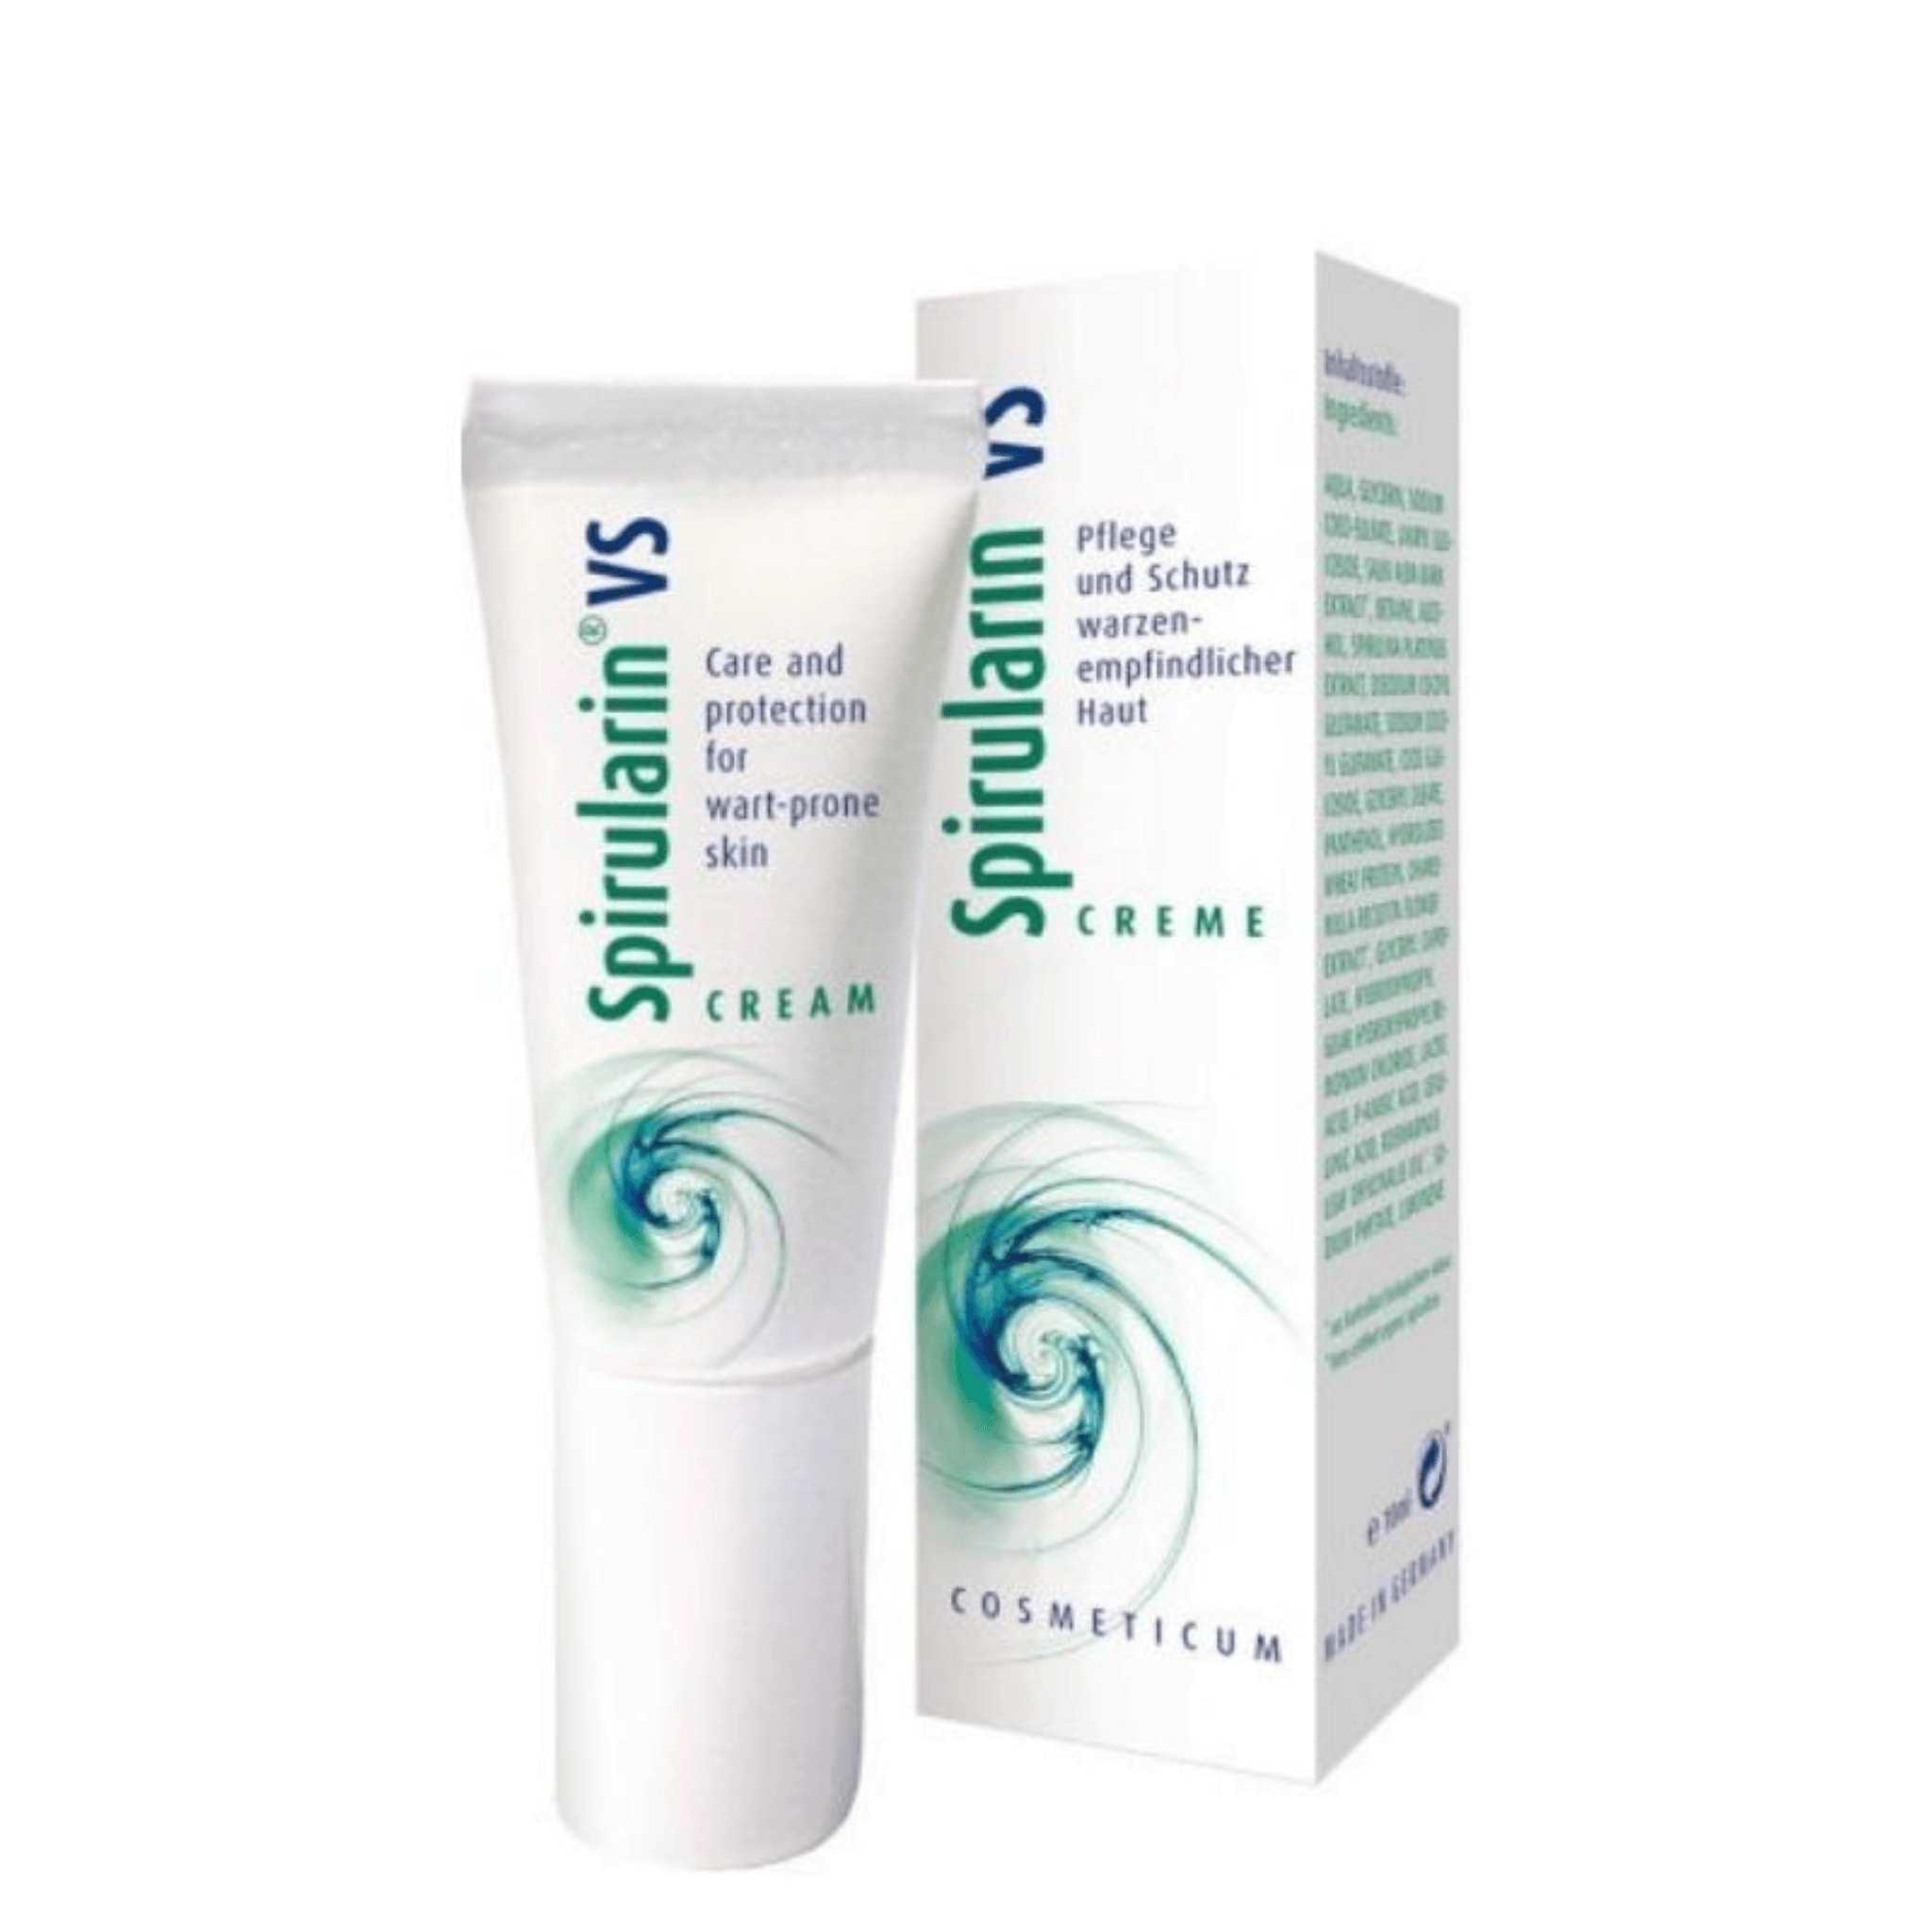 Spirularin®VS Wart Cream